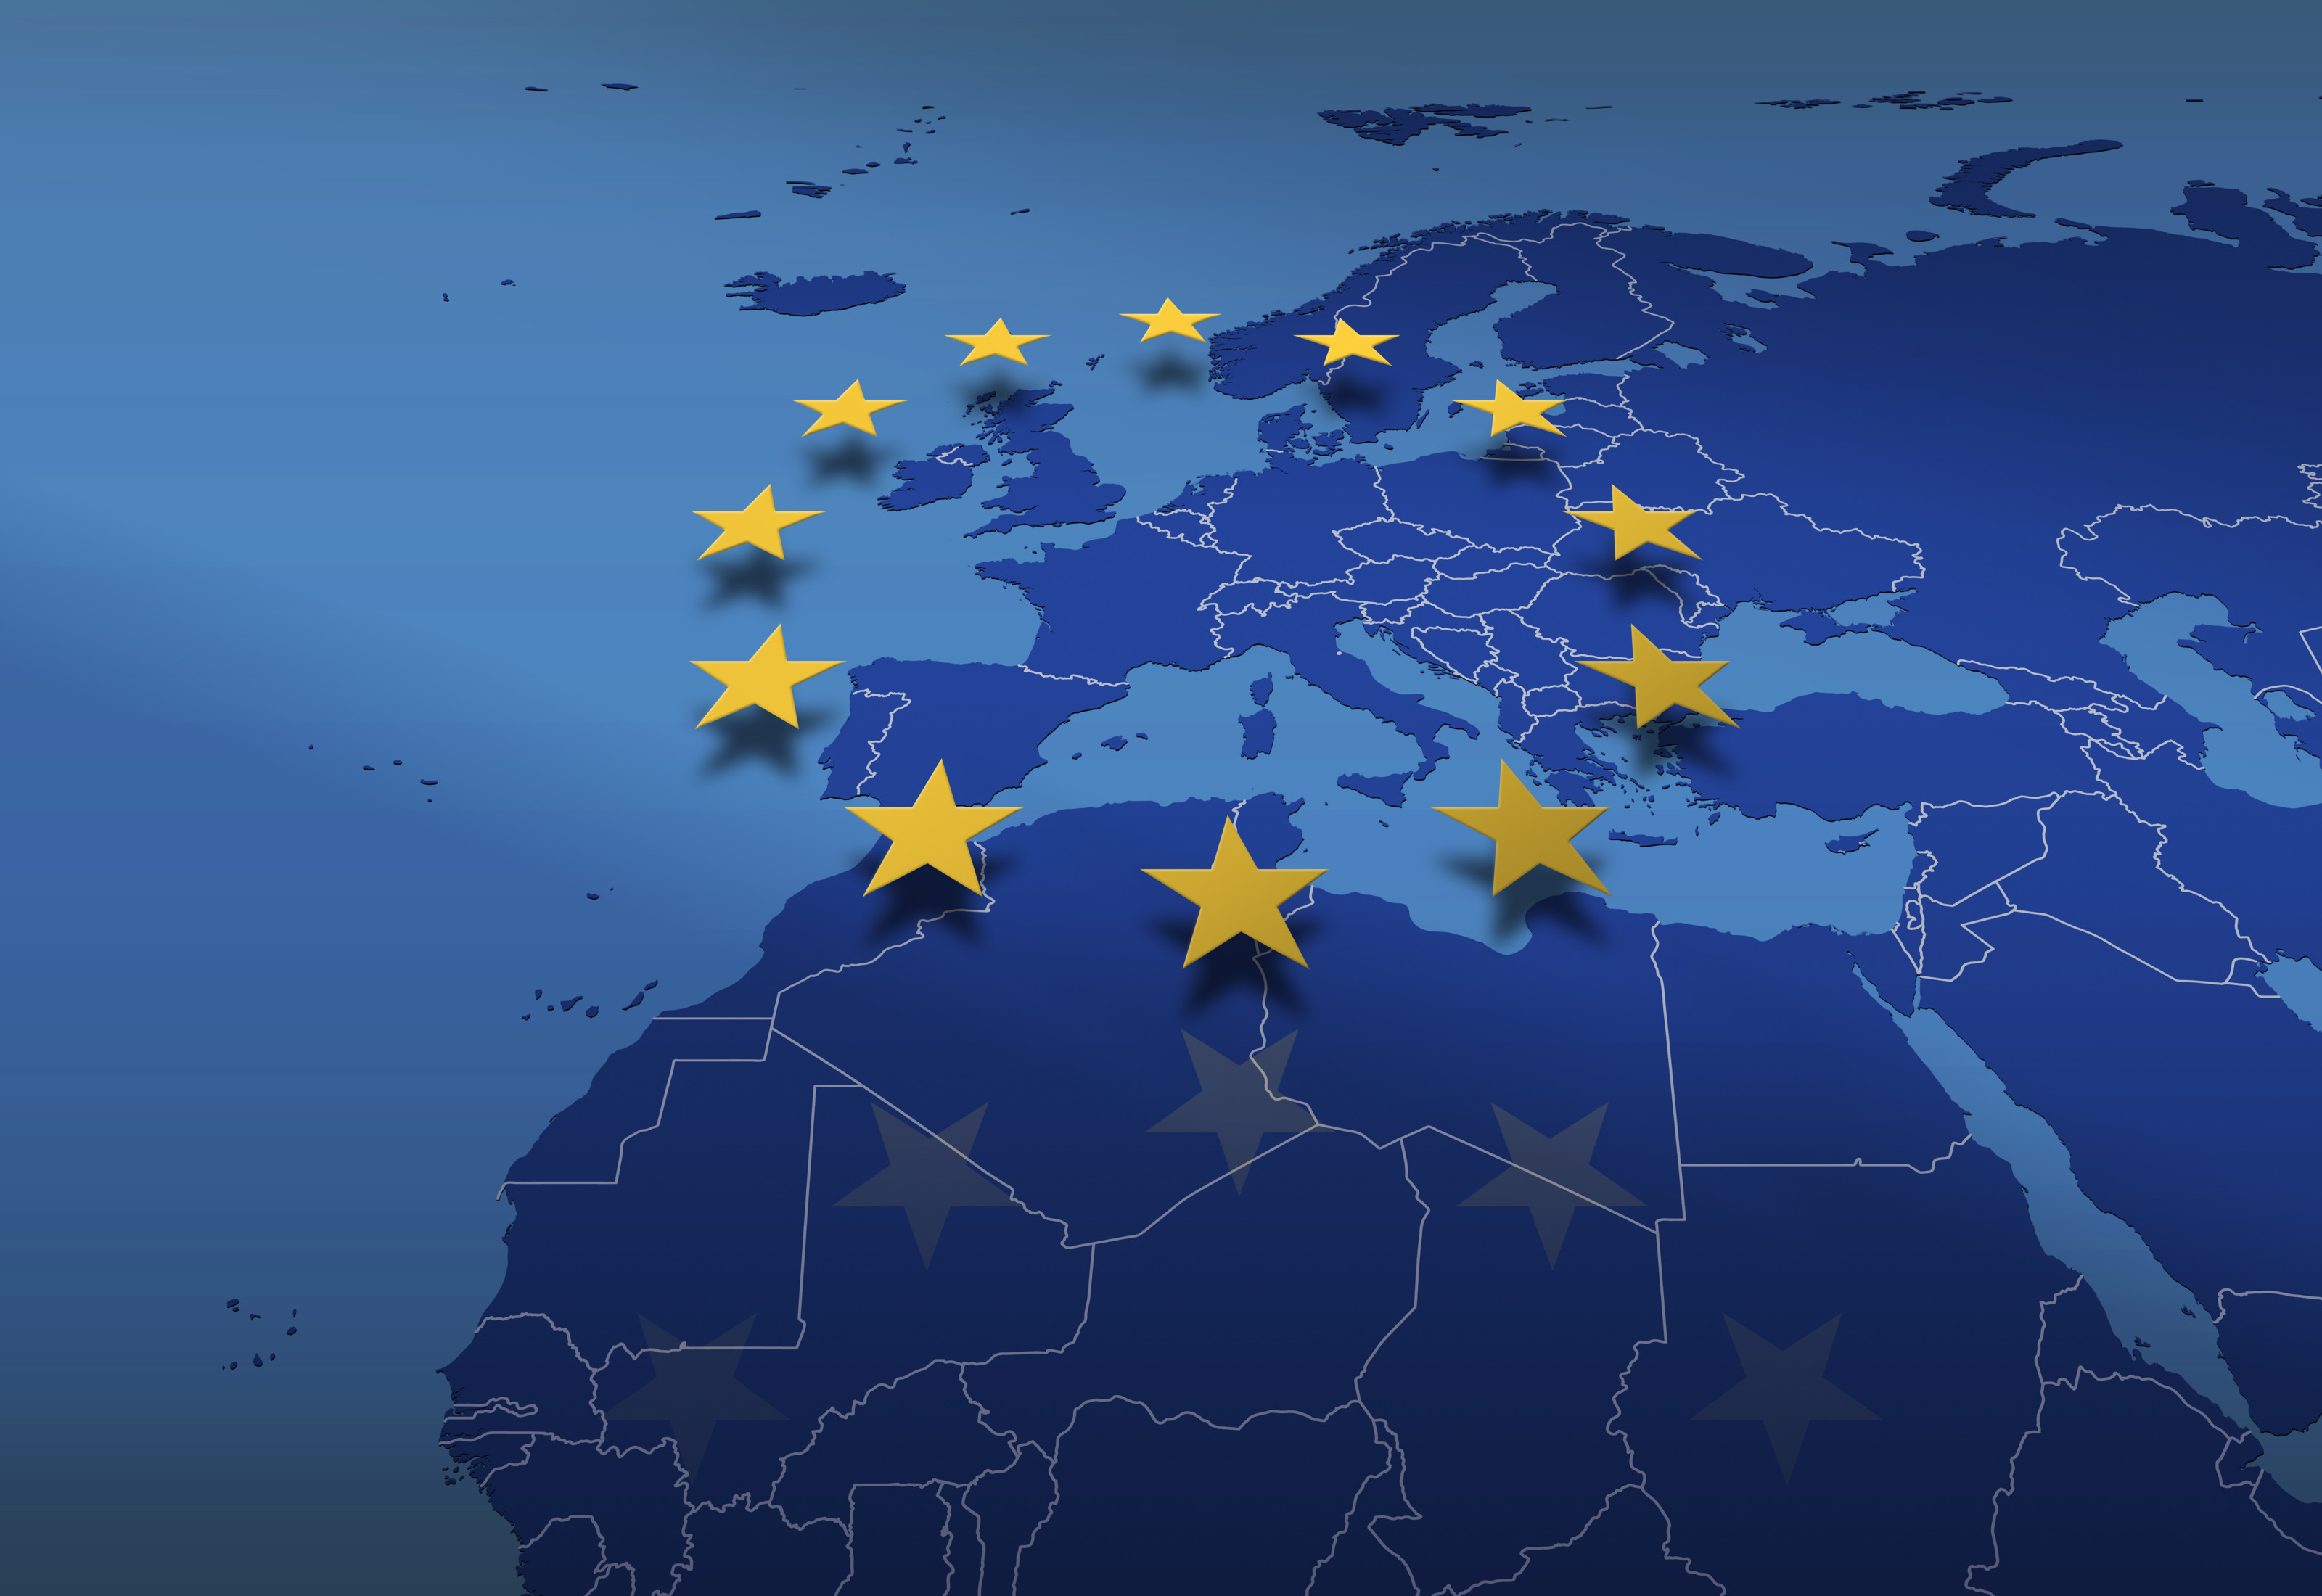 Blaue Landkarte mit Europa im Fokus, Afrika und Asien im Ausschnitt, darüberliegend Overlay der EU-Flagge: gelbe Sterne in Kreisform angeordnet